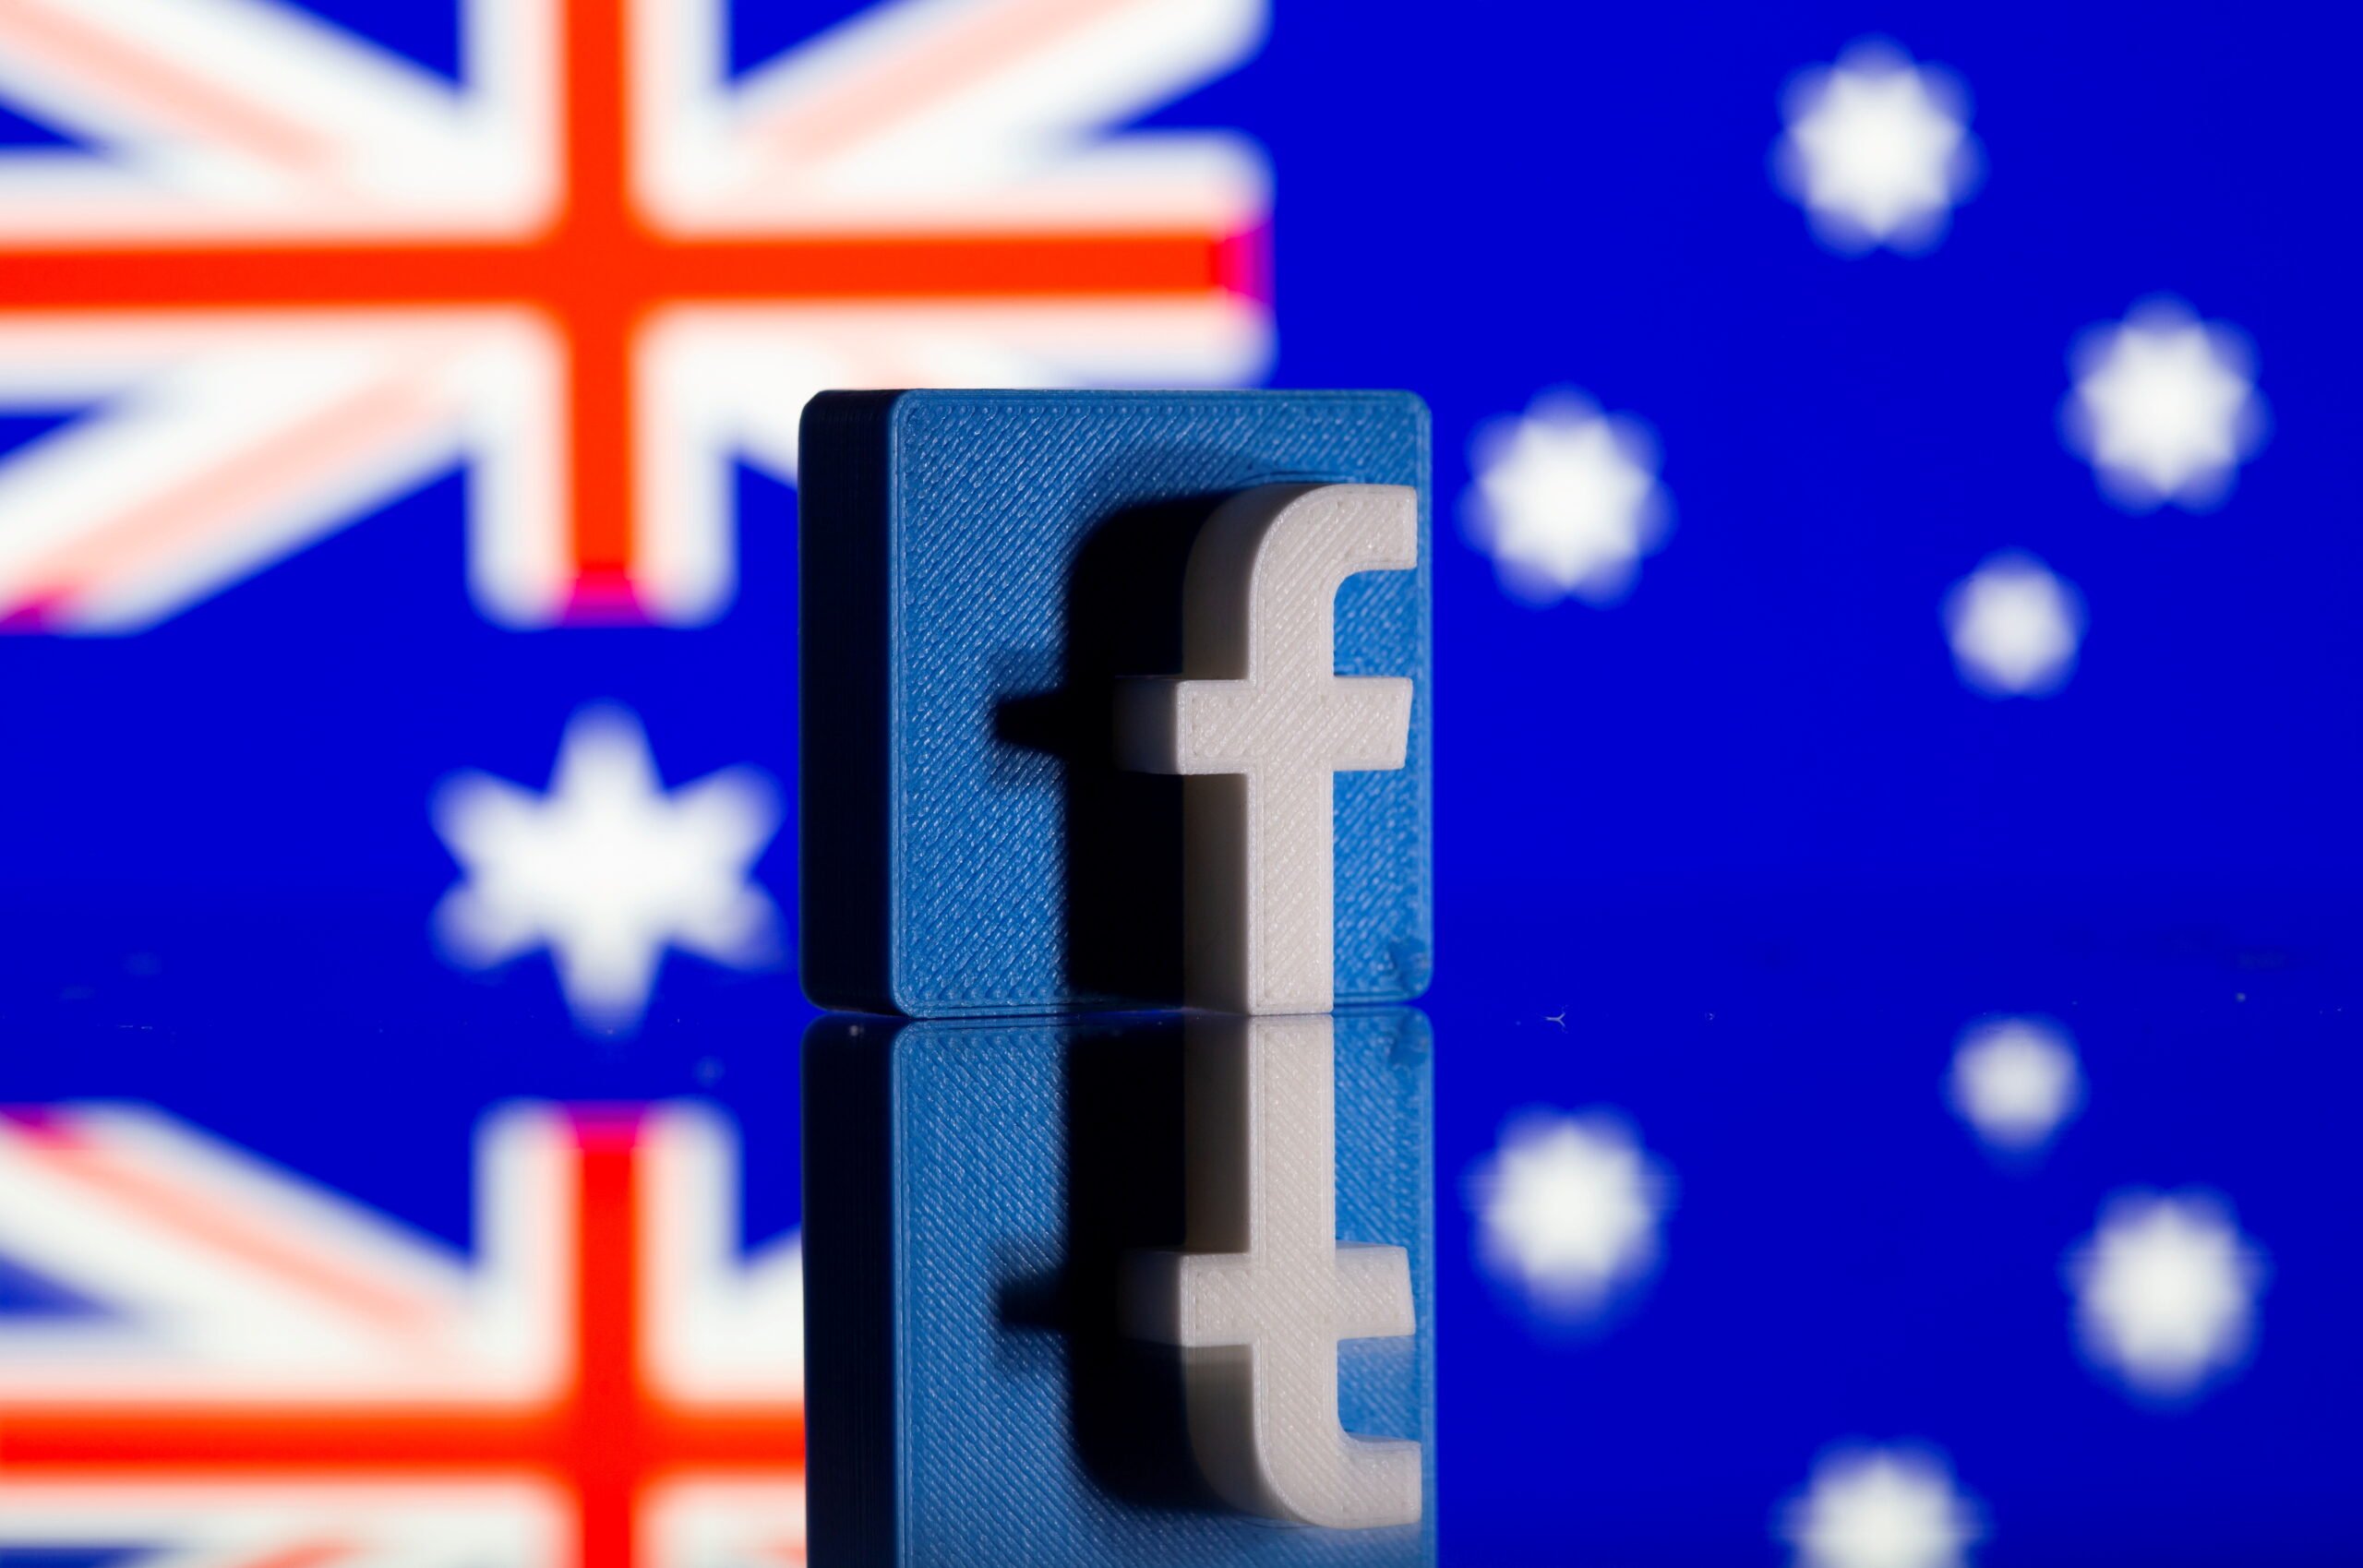 Ο Ψηφιακός Πόλεμος: Facebook για την επαναφορά των αυστραλιανών ειδησεογραφικών σελίδων μετά από τροποποιήσεις στους νόμους των μέσων ενημέρωσης